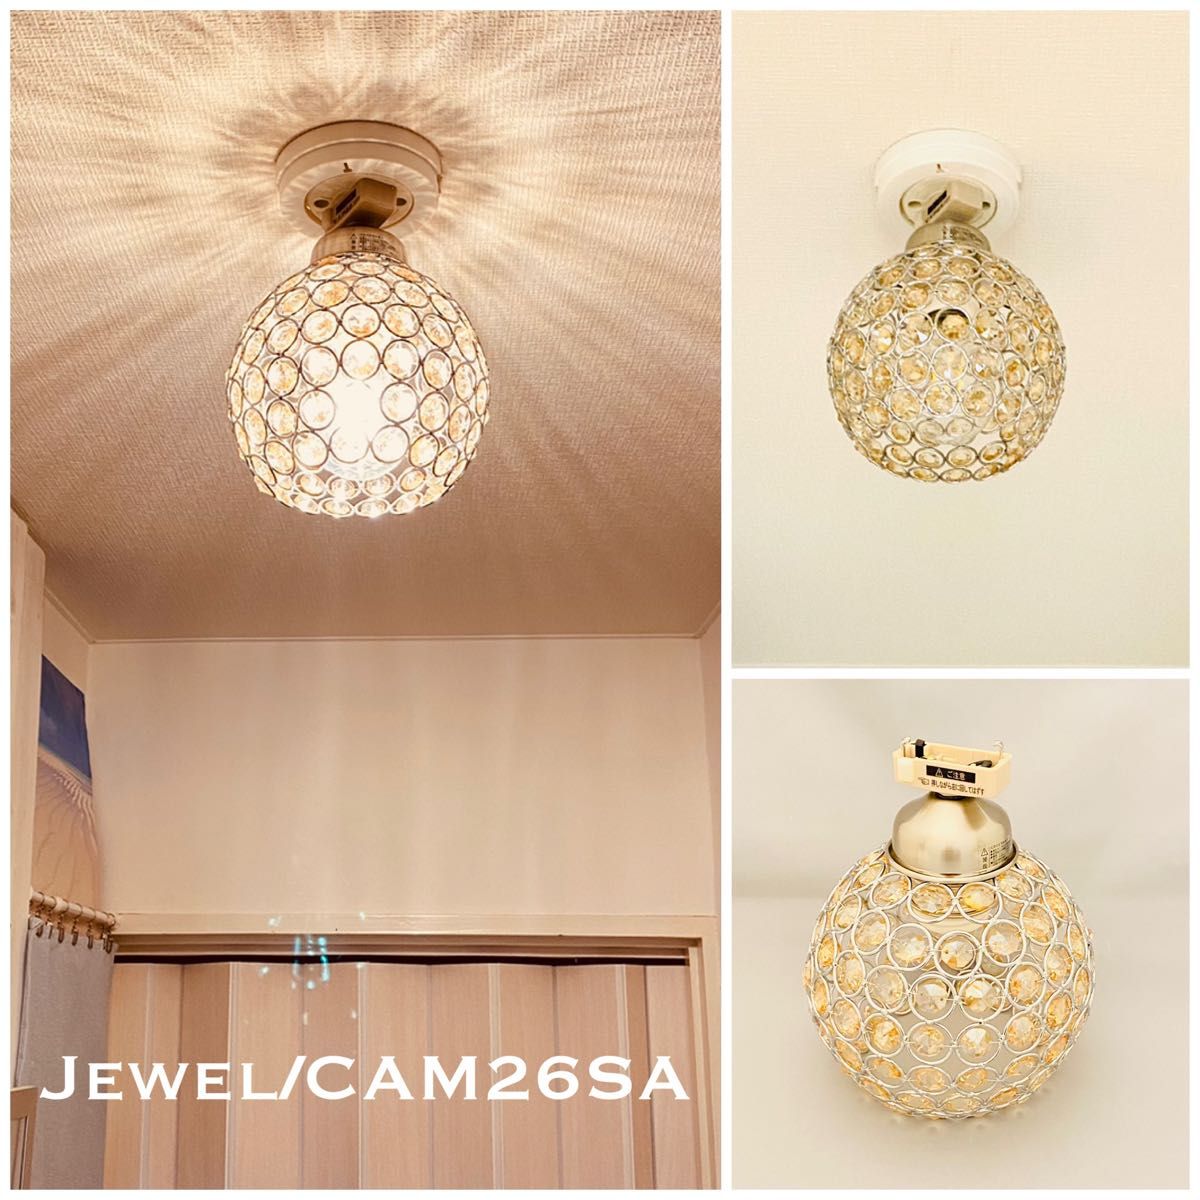 天井照明 Jewel/CAMSA シーリングライト ガラスビーズ ランプシェード E26ホルダーソケット サテンクローム おしゃれ